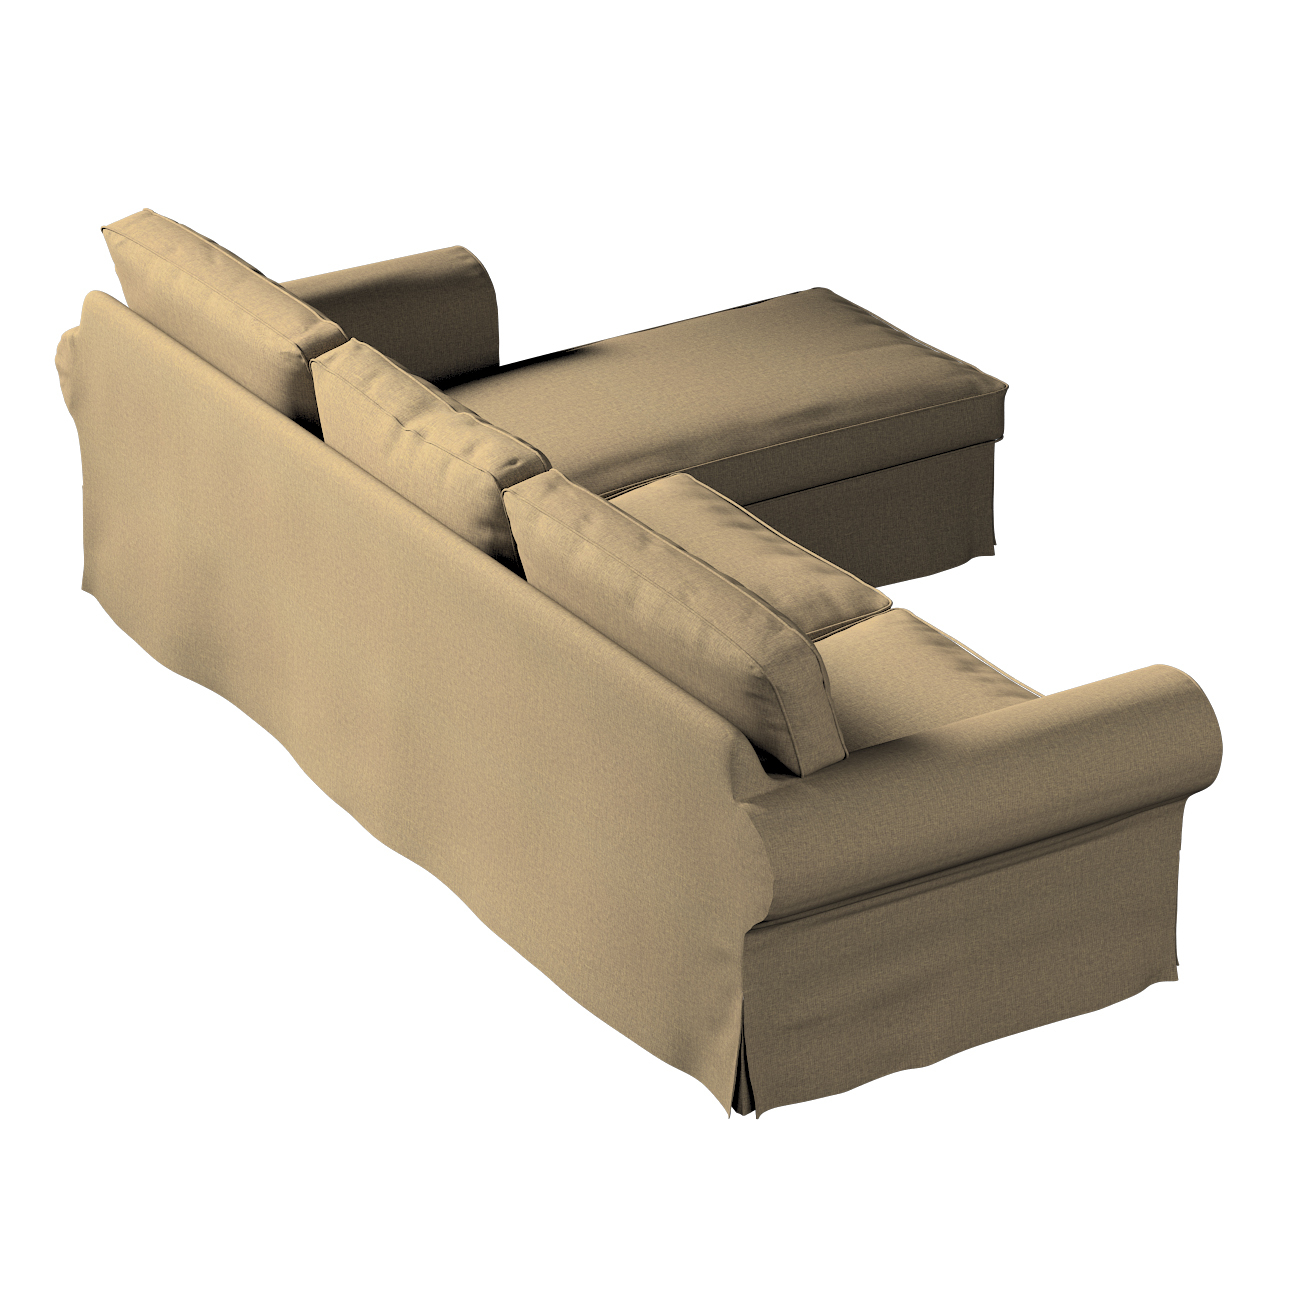 Bezug für Ektorp 2-Sitzer Sofa mit Recamiere, grau-braun, Ektorp 2-Sitzer S günstig online kaufen